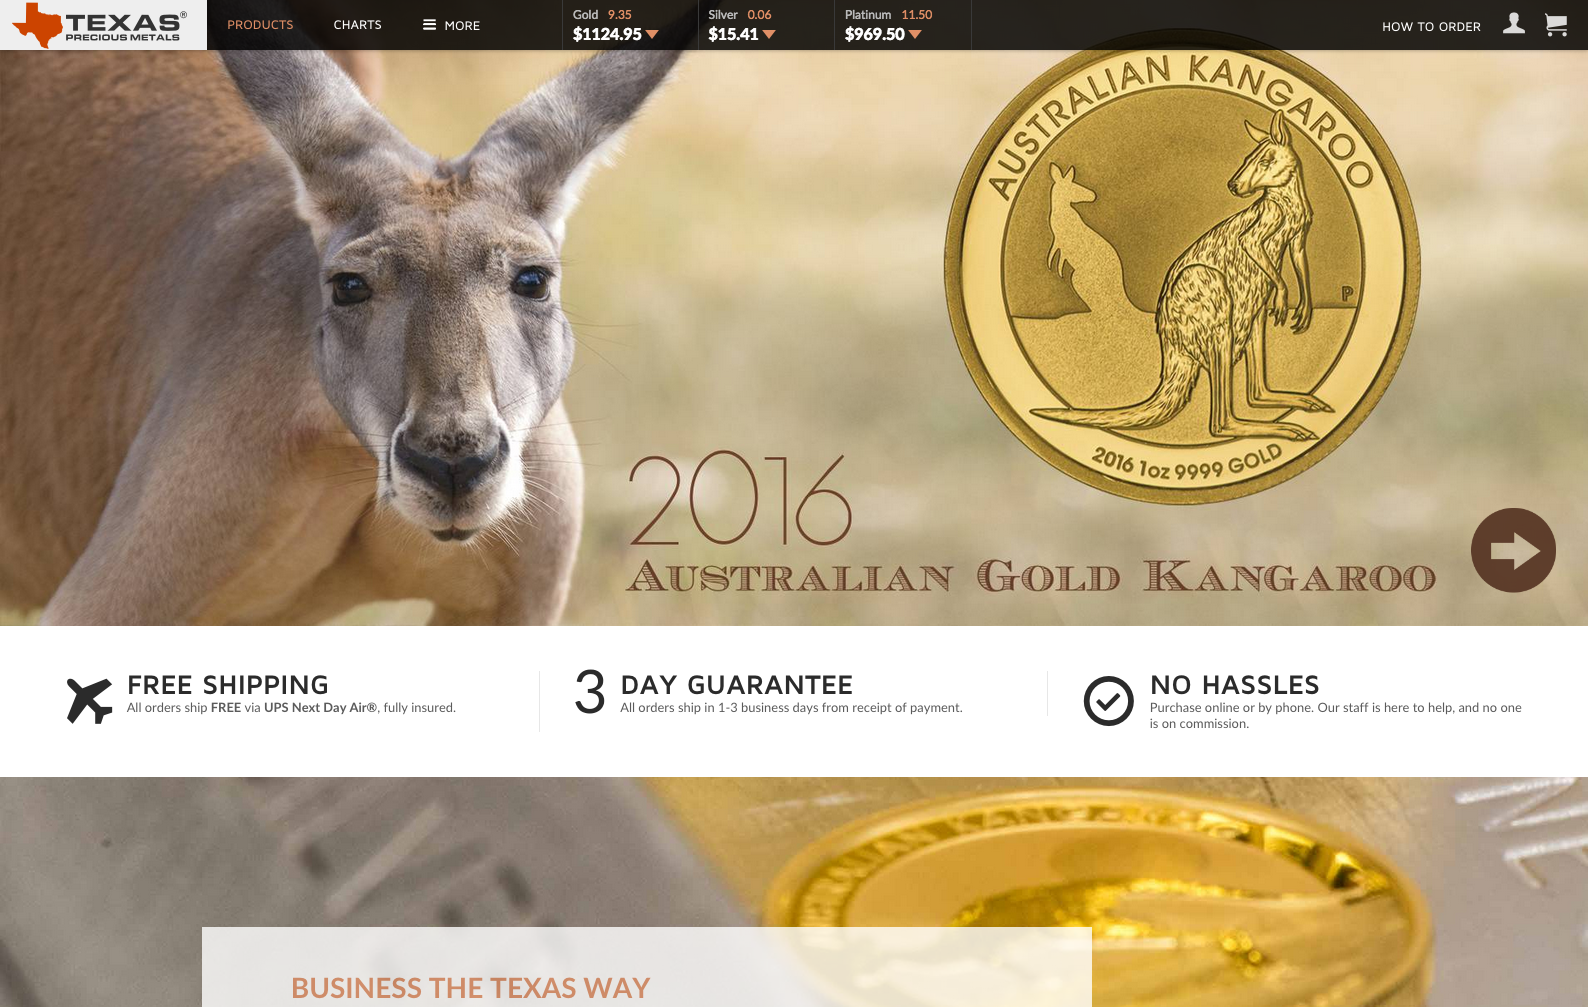 texas precious metals web design inspiration